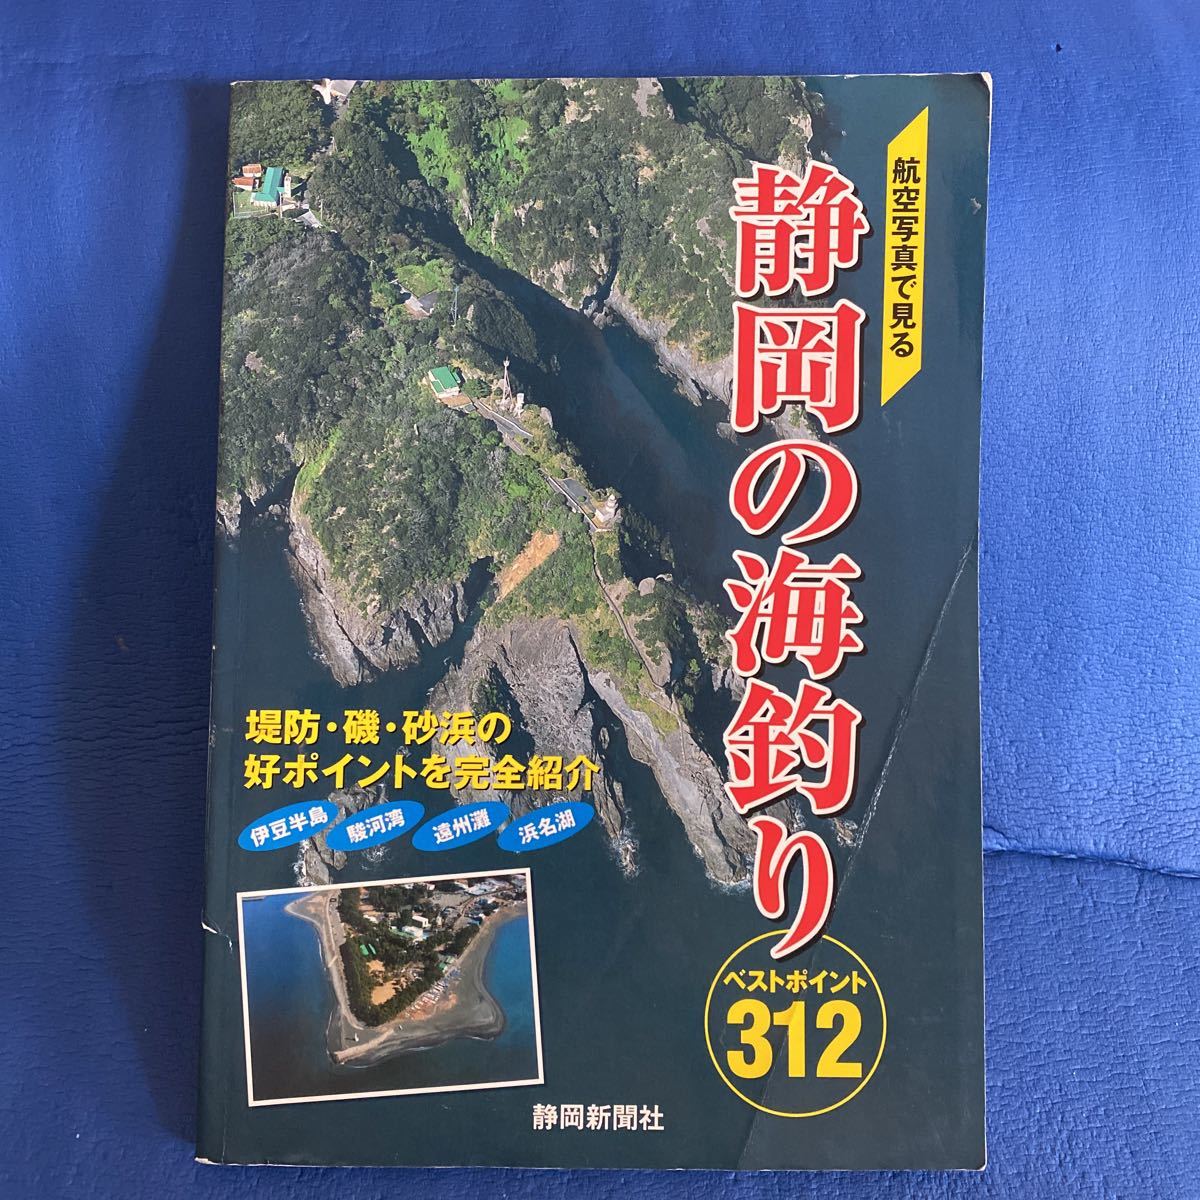 YT-0032 航空写真で見る 静岡の海釣り ベストポイント312 空撮 航空写真 海釣り 沖釣り_画像1